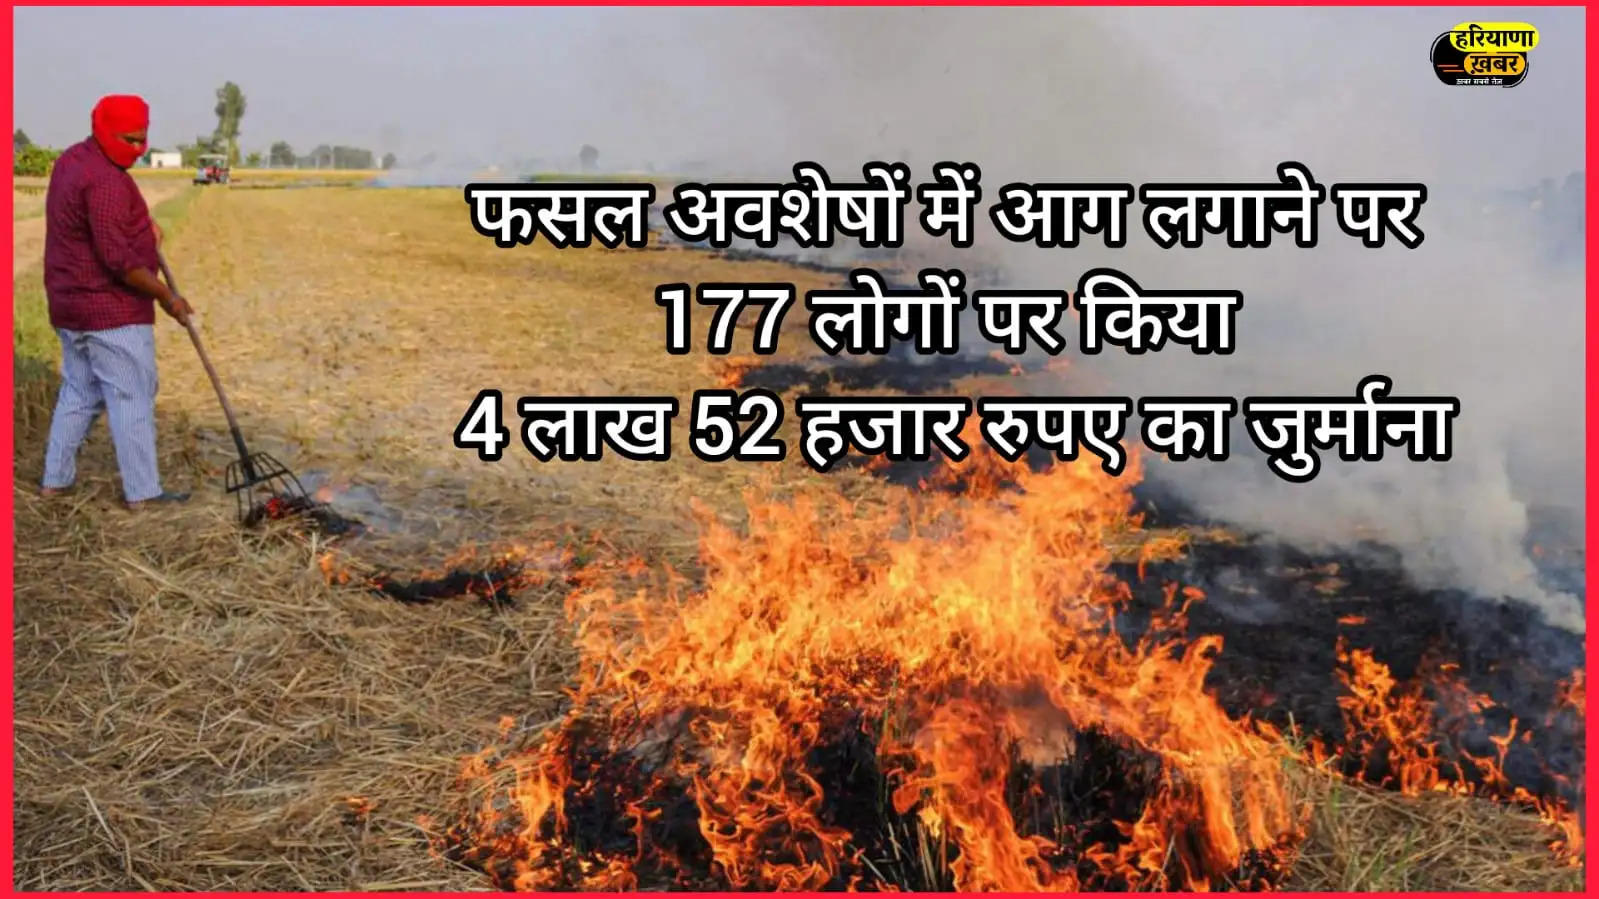 फसल अवशेषों में आग लगाने पर 177 लोगों पर किया 4 लाख 52 हजार रुपए का जुर्माना